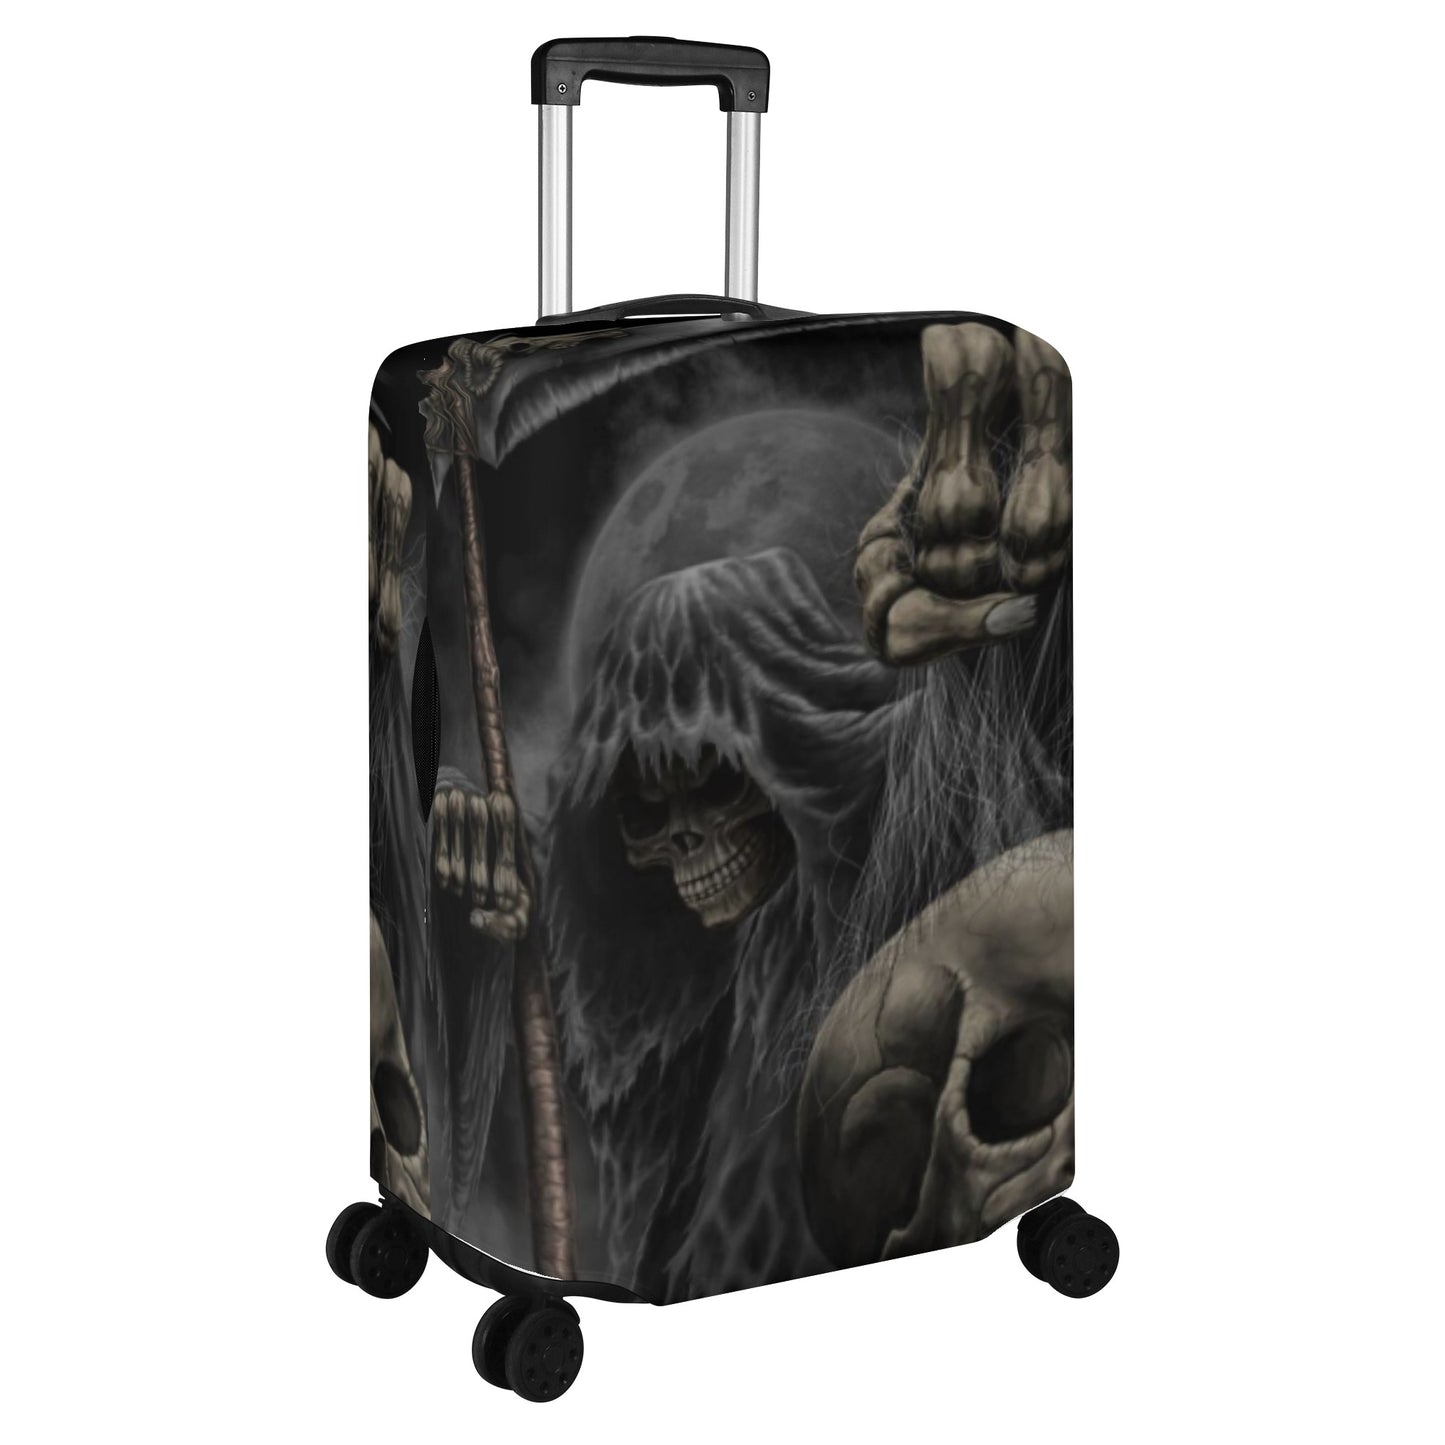 Grim reaper Horror skull lugage suitcase cover set